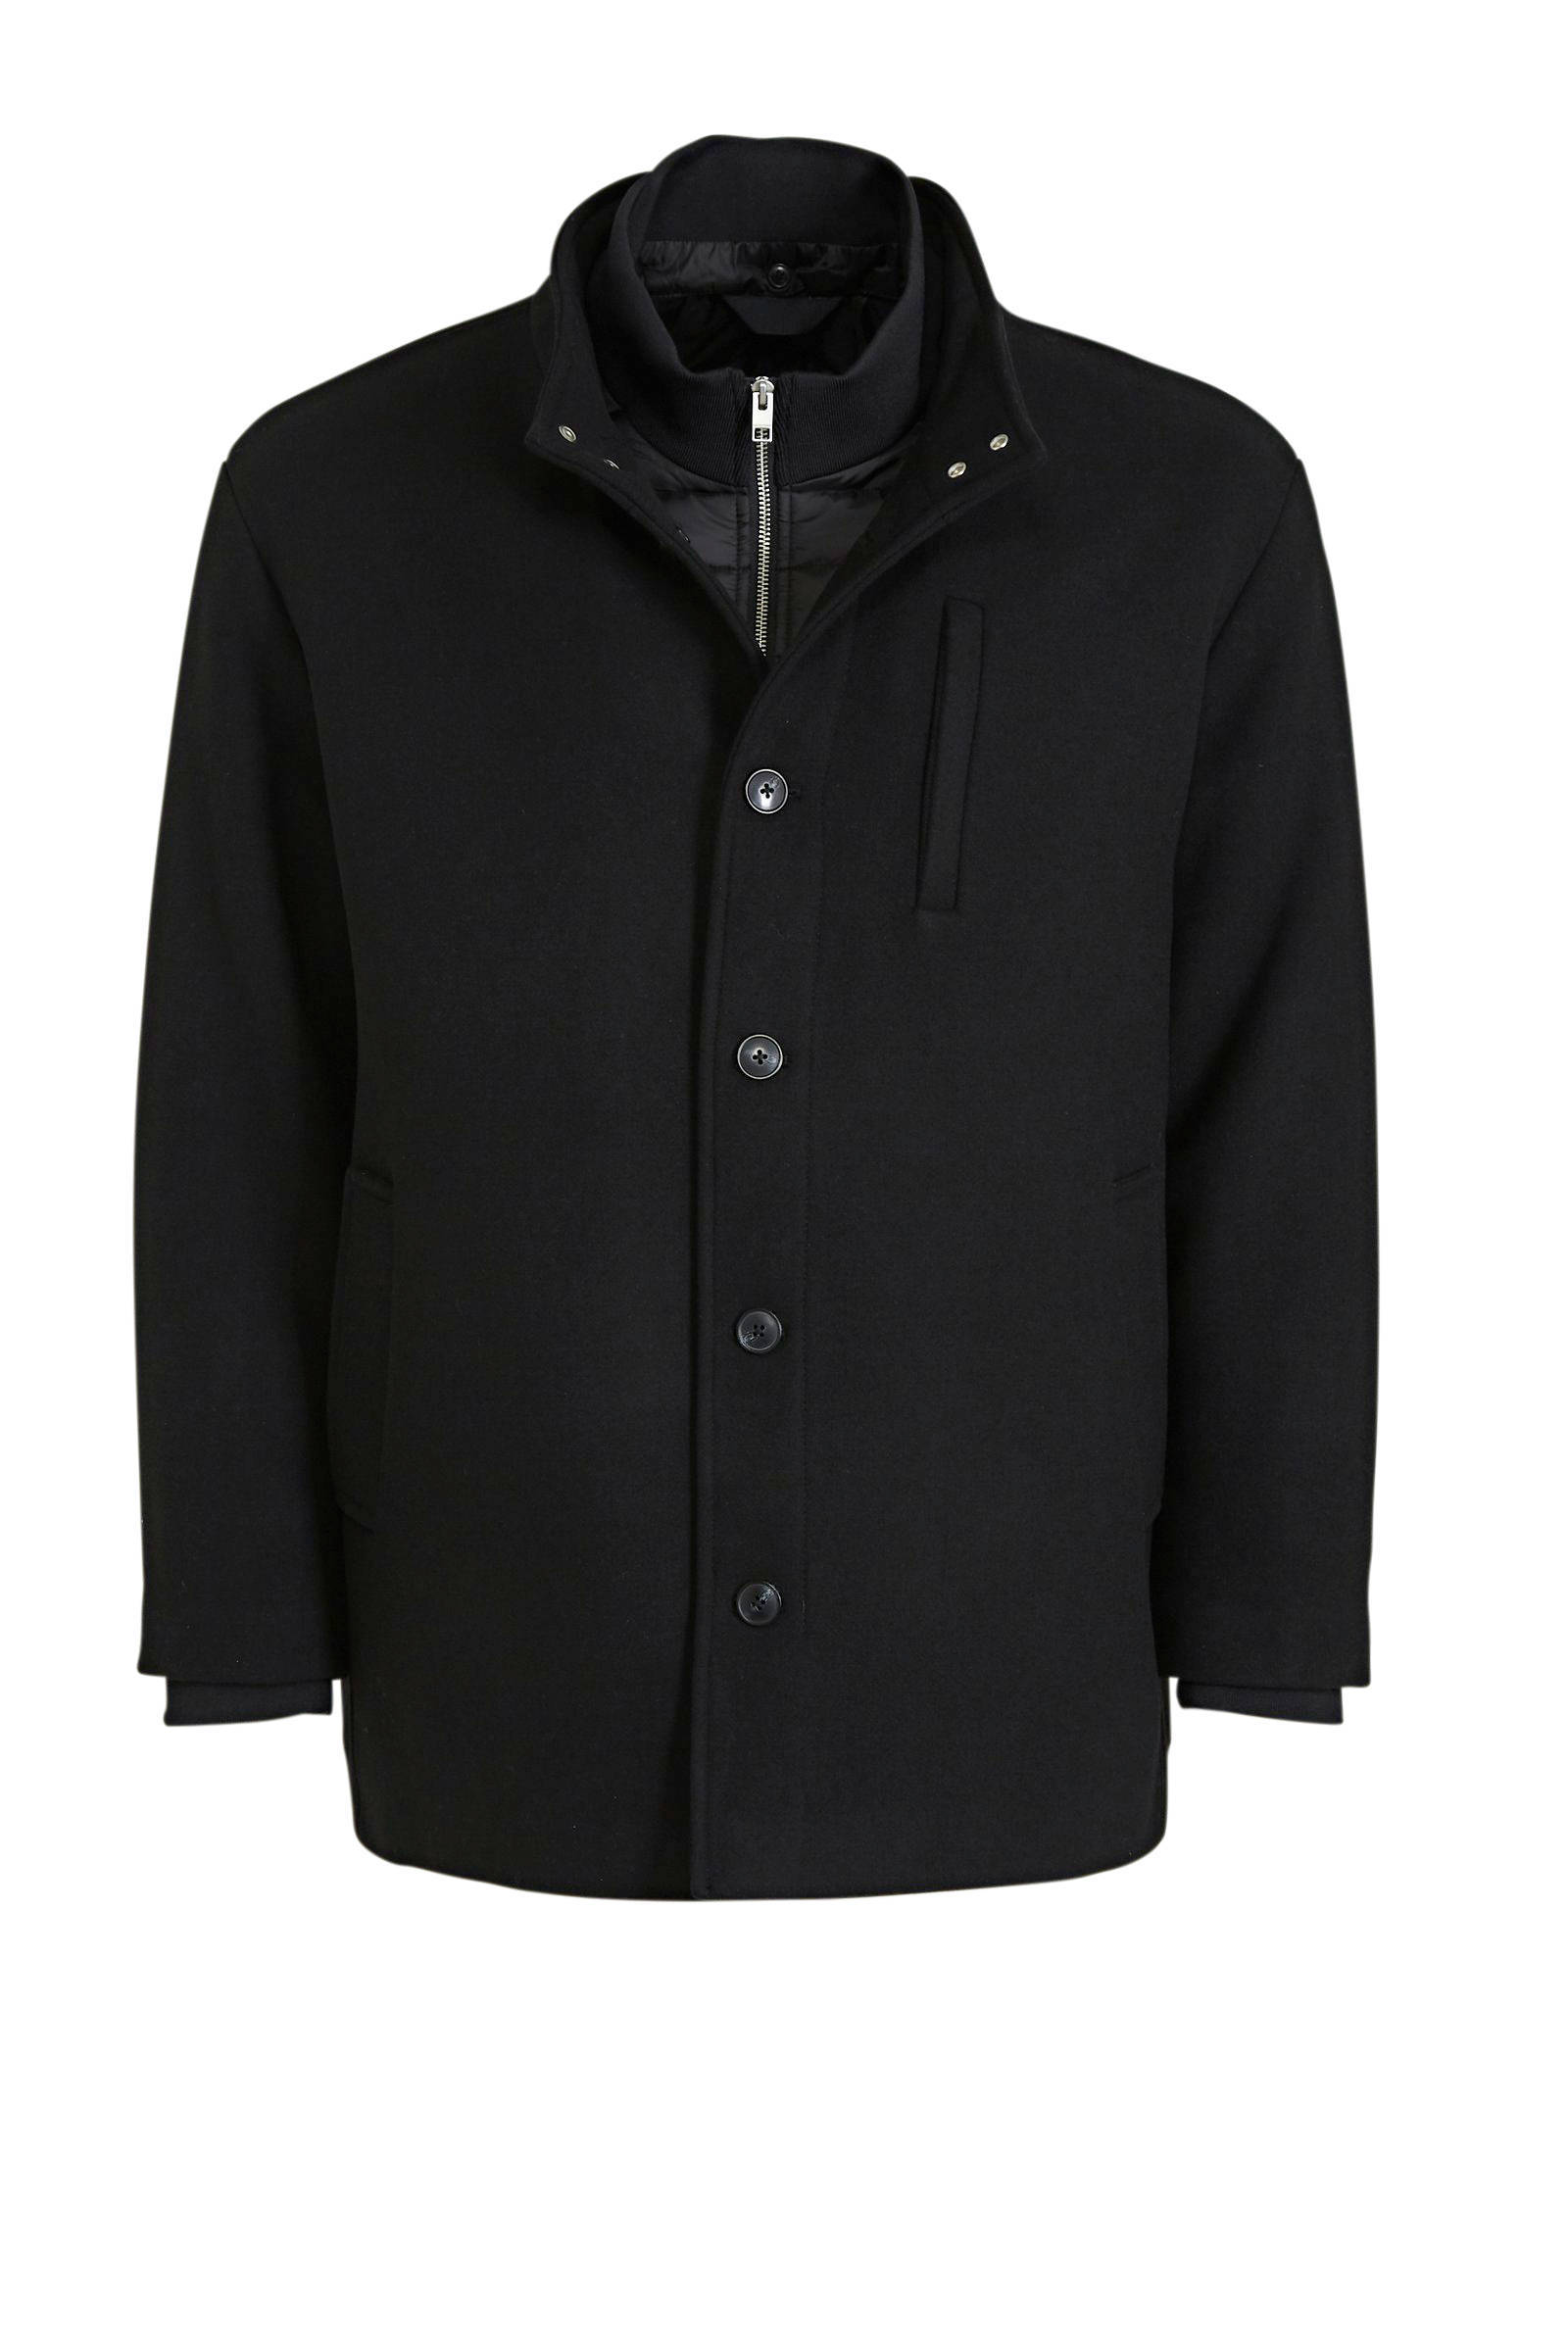 JACK & JONES PLUS SIZE jas met wol zwart online kopen